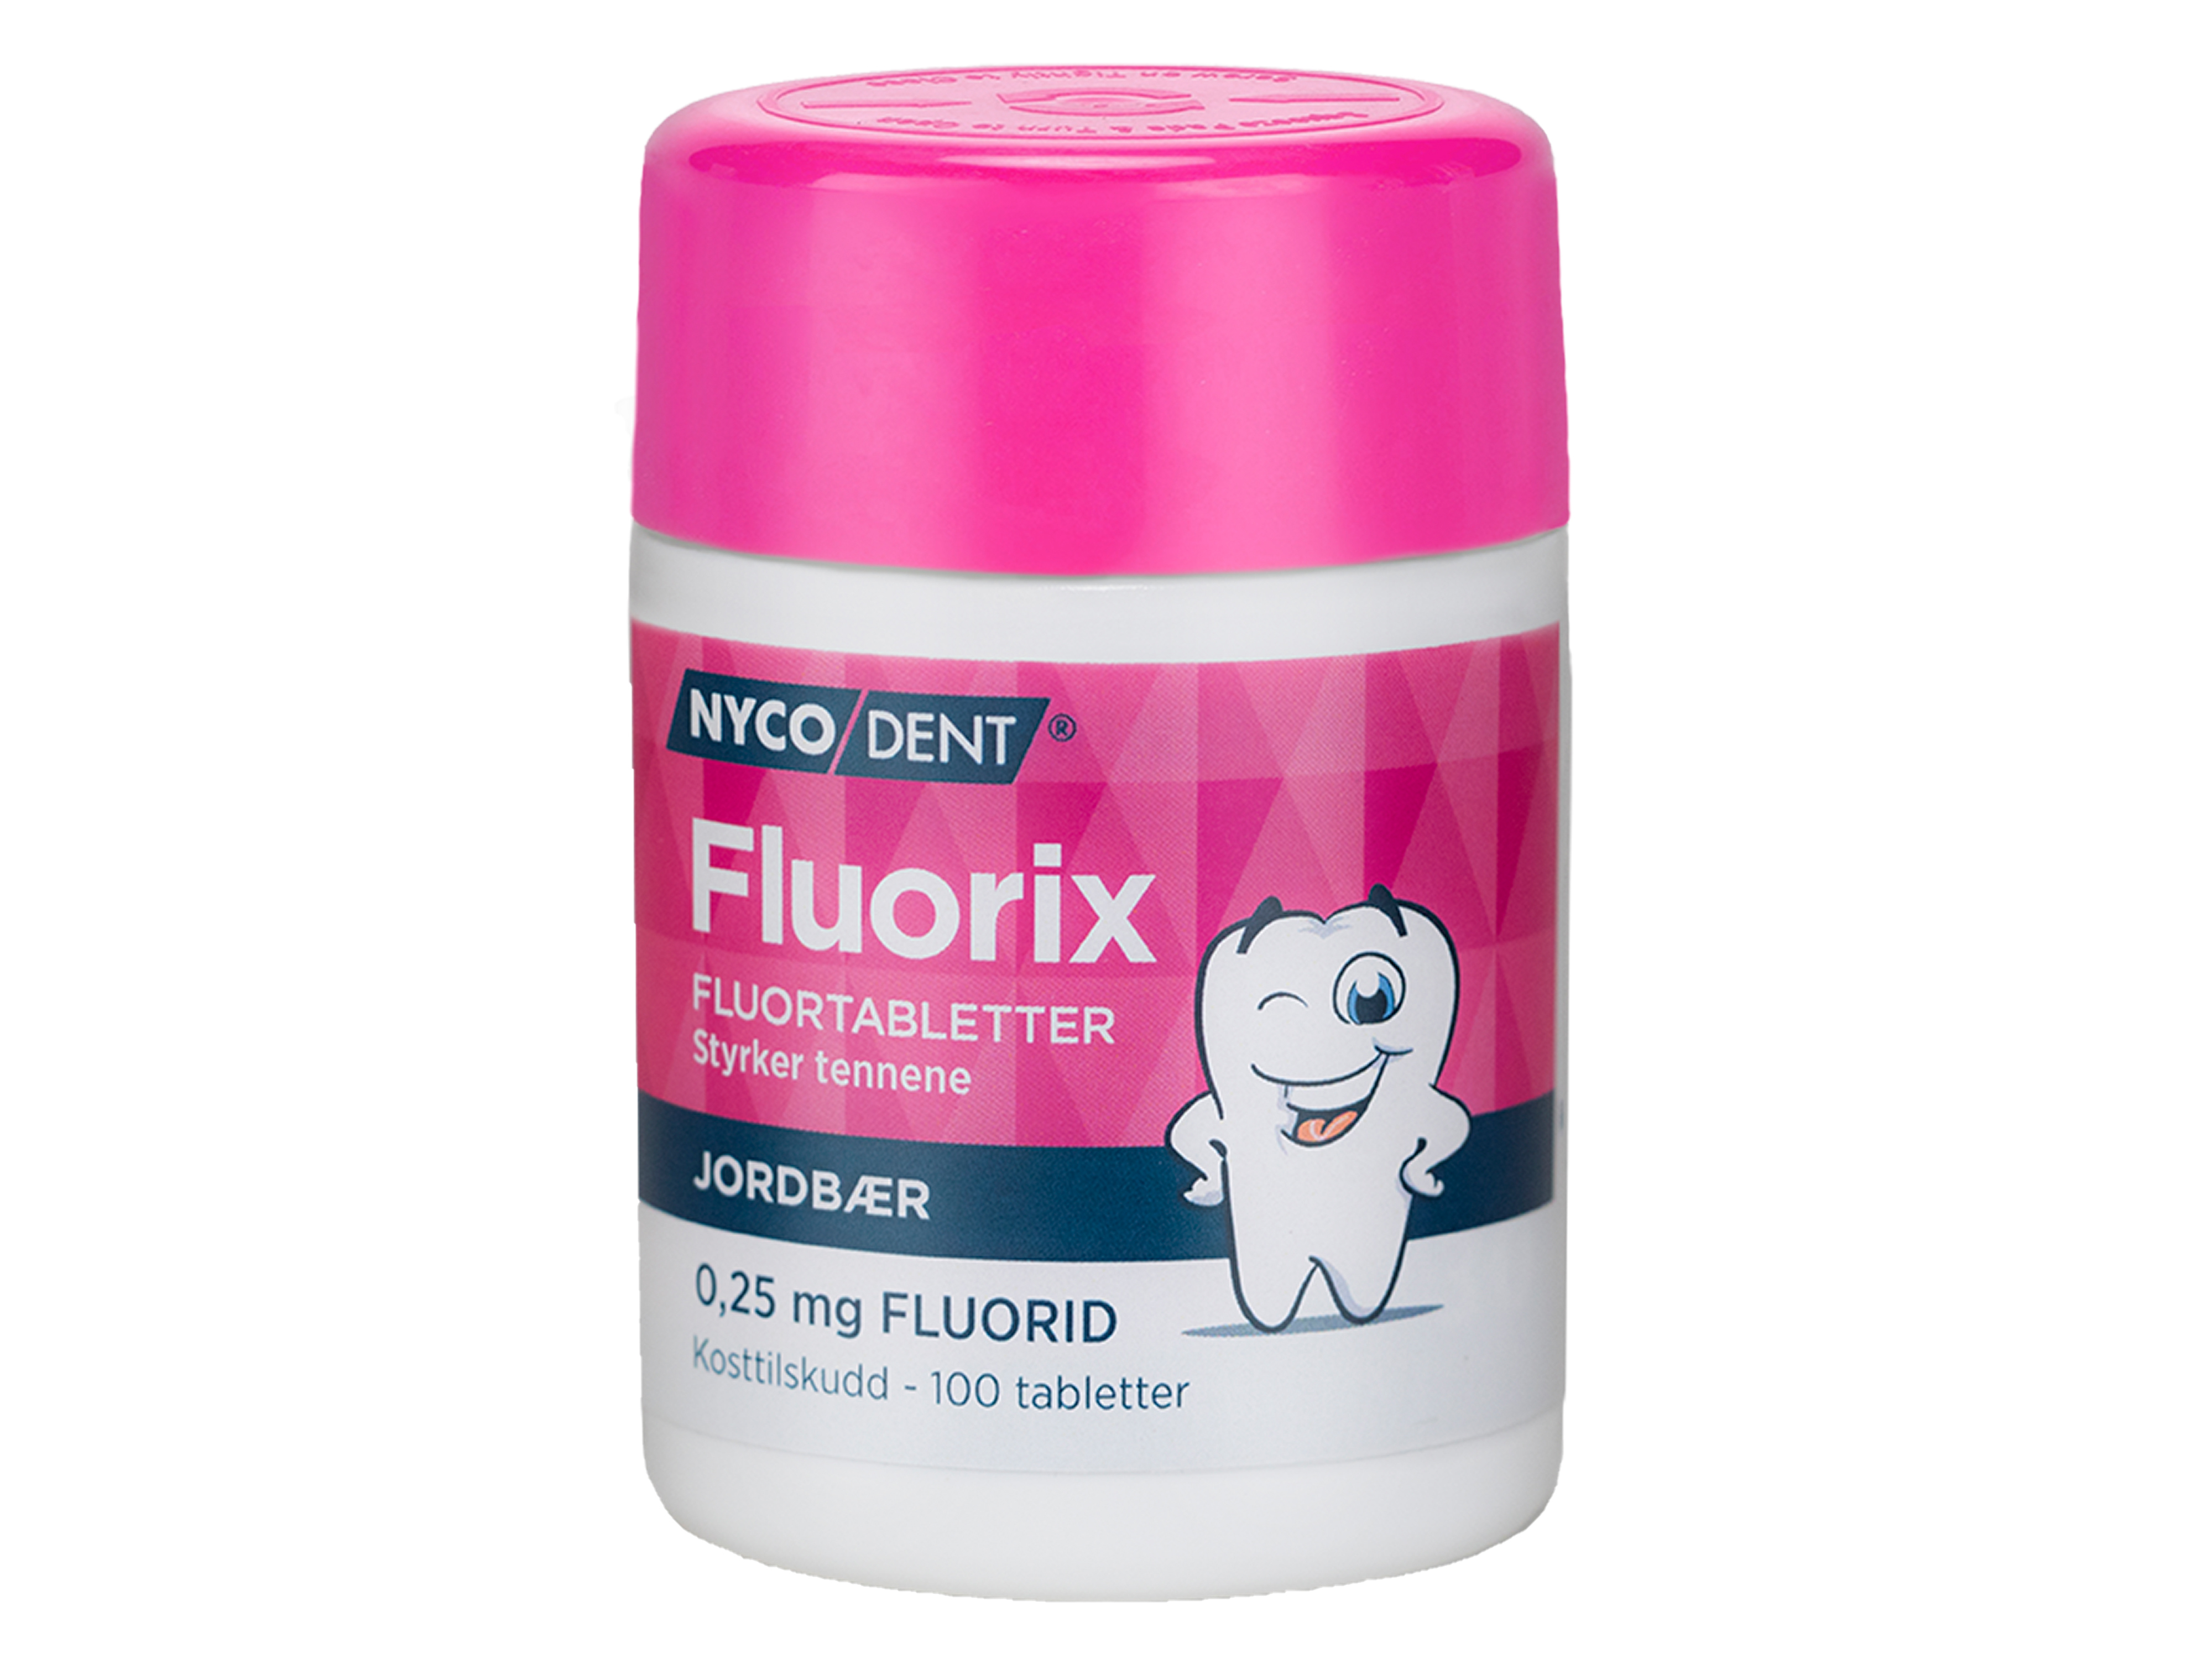 Fluorix m/ Jordbær 0,25 mg, 100 stk